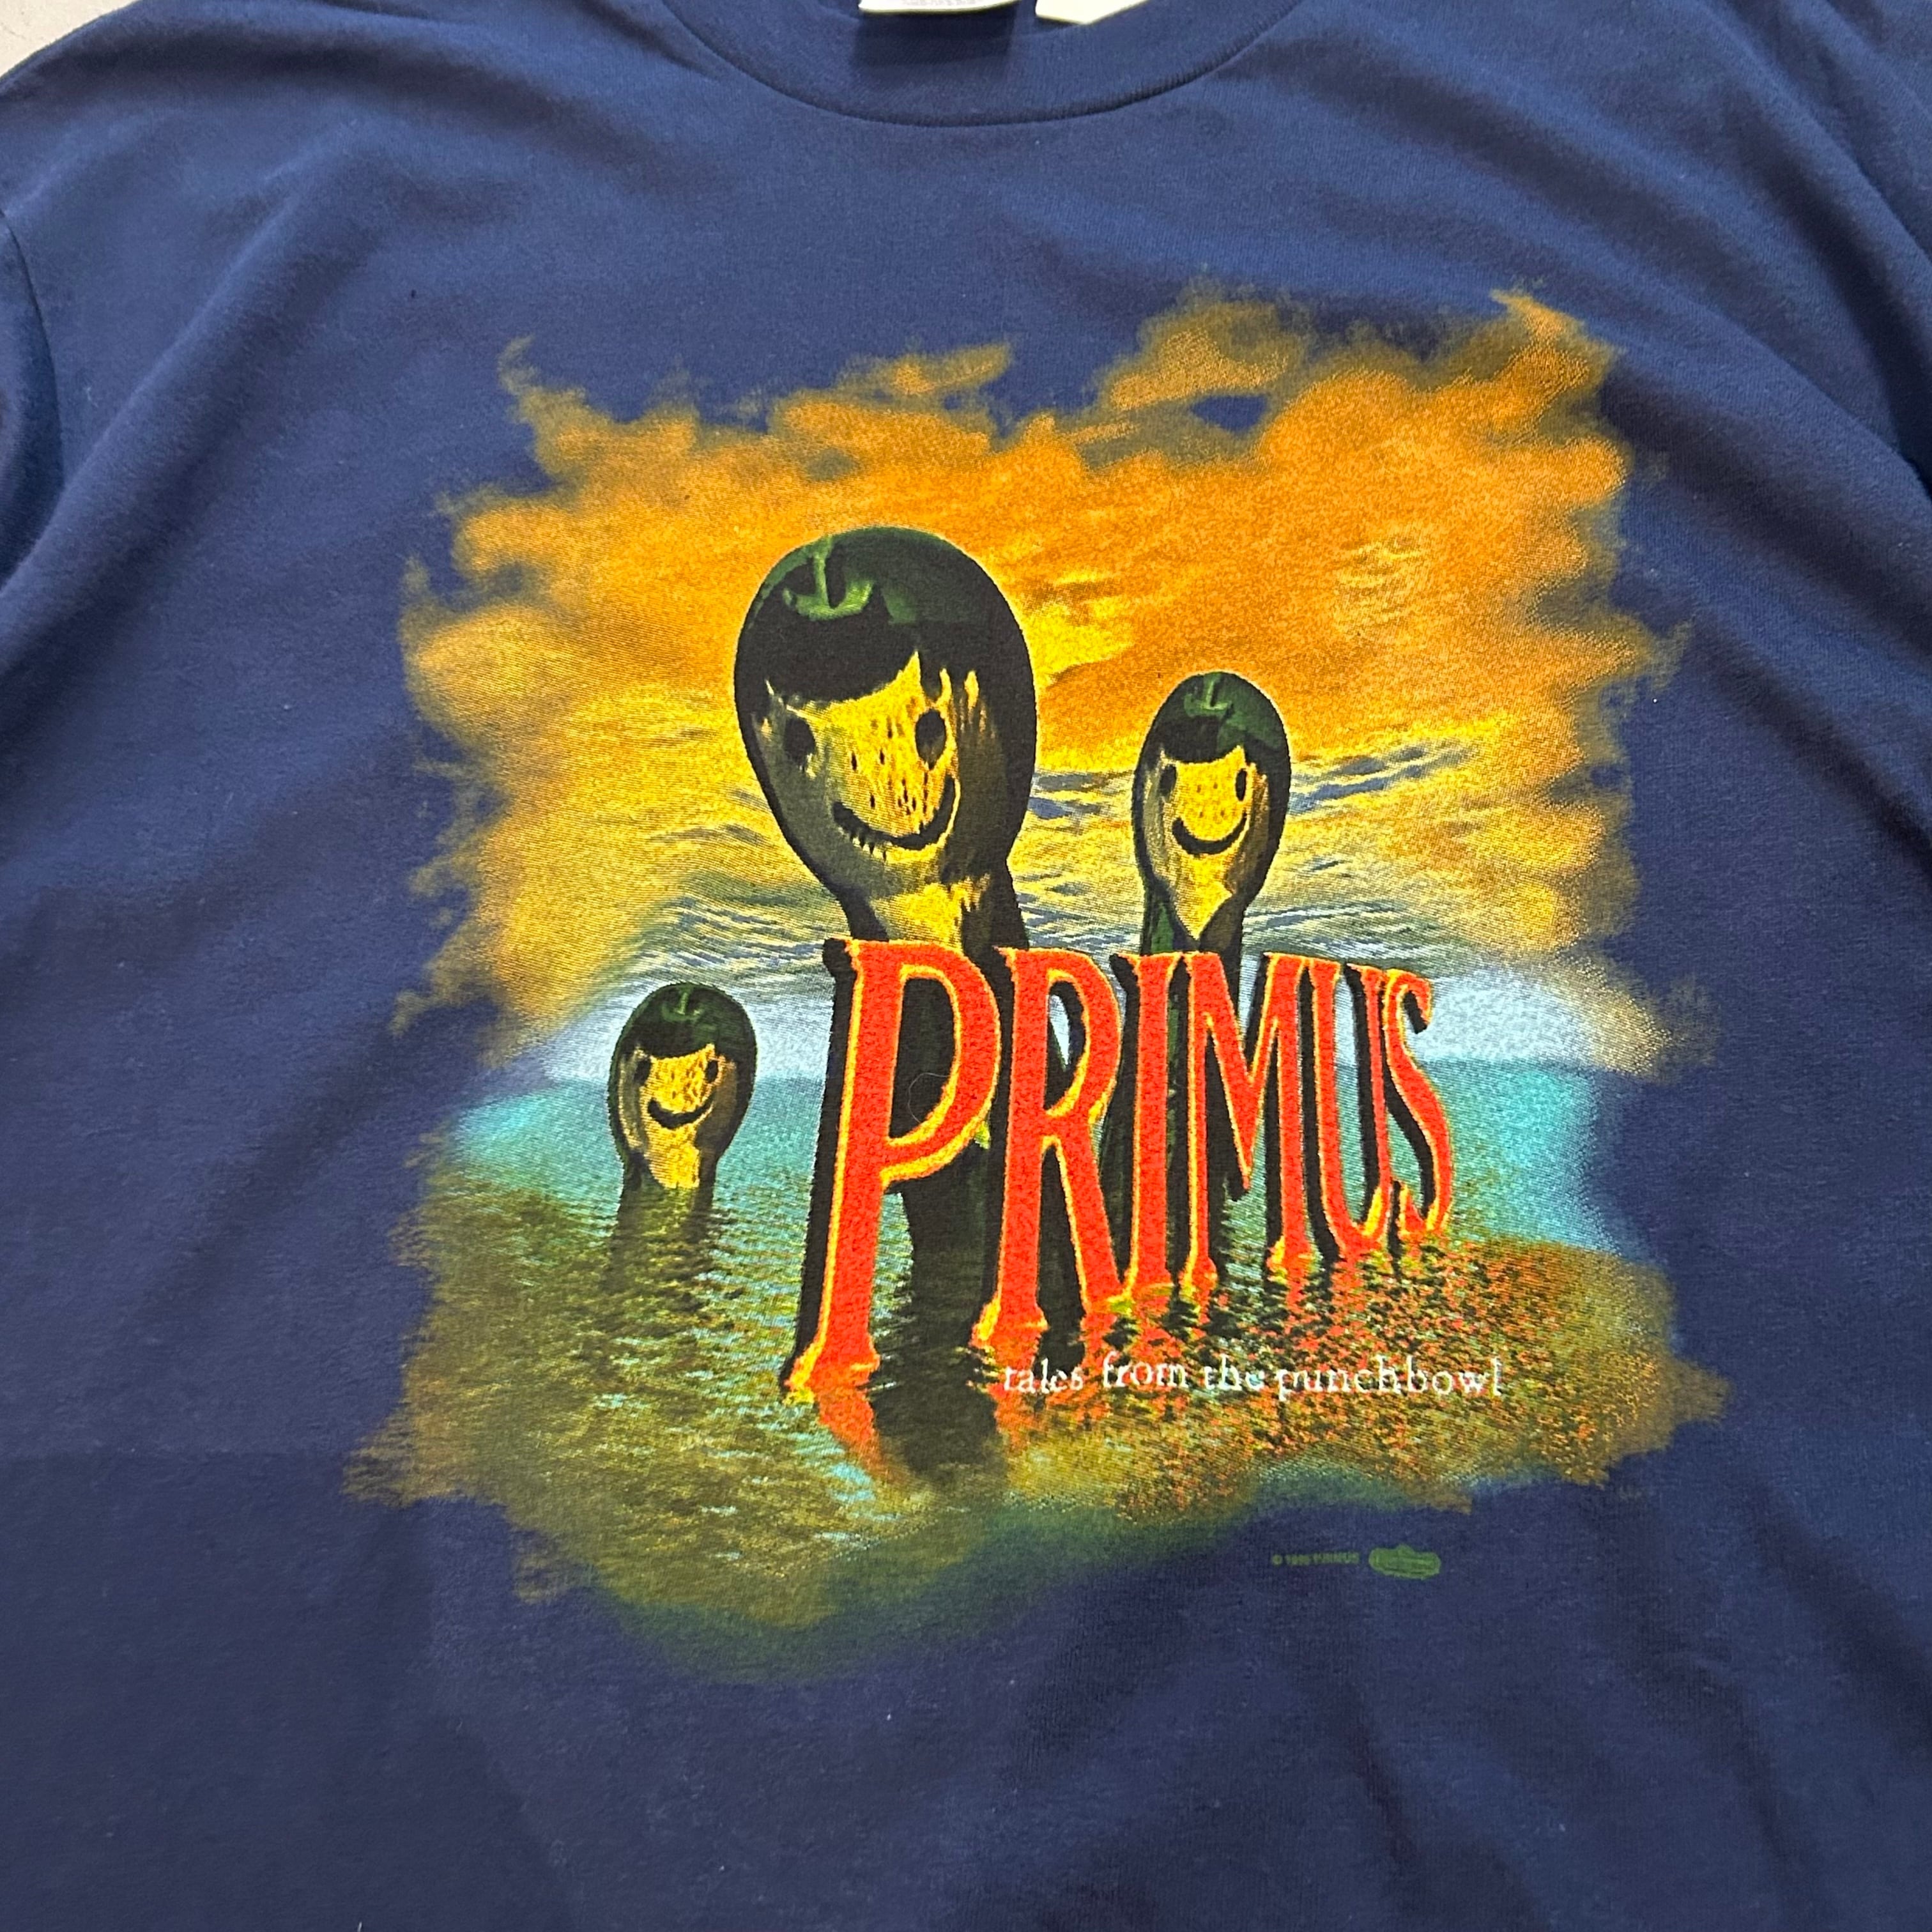 PRIMUS Tシャツ 90s素人採寸ですのでご容赦ください